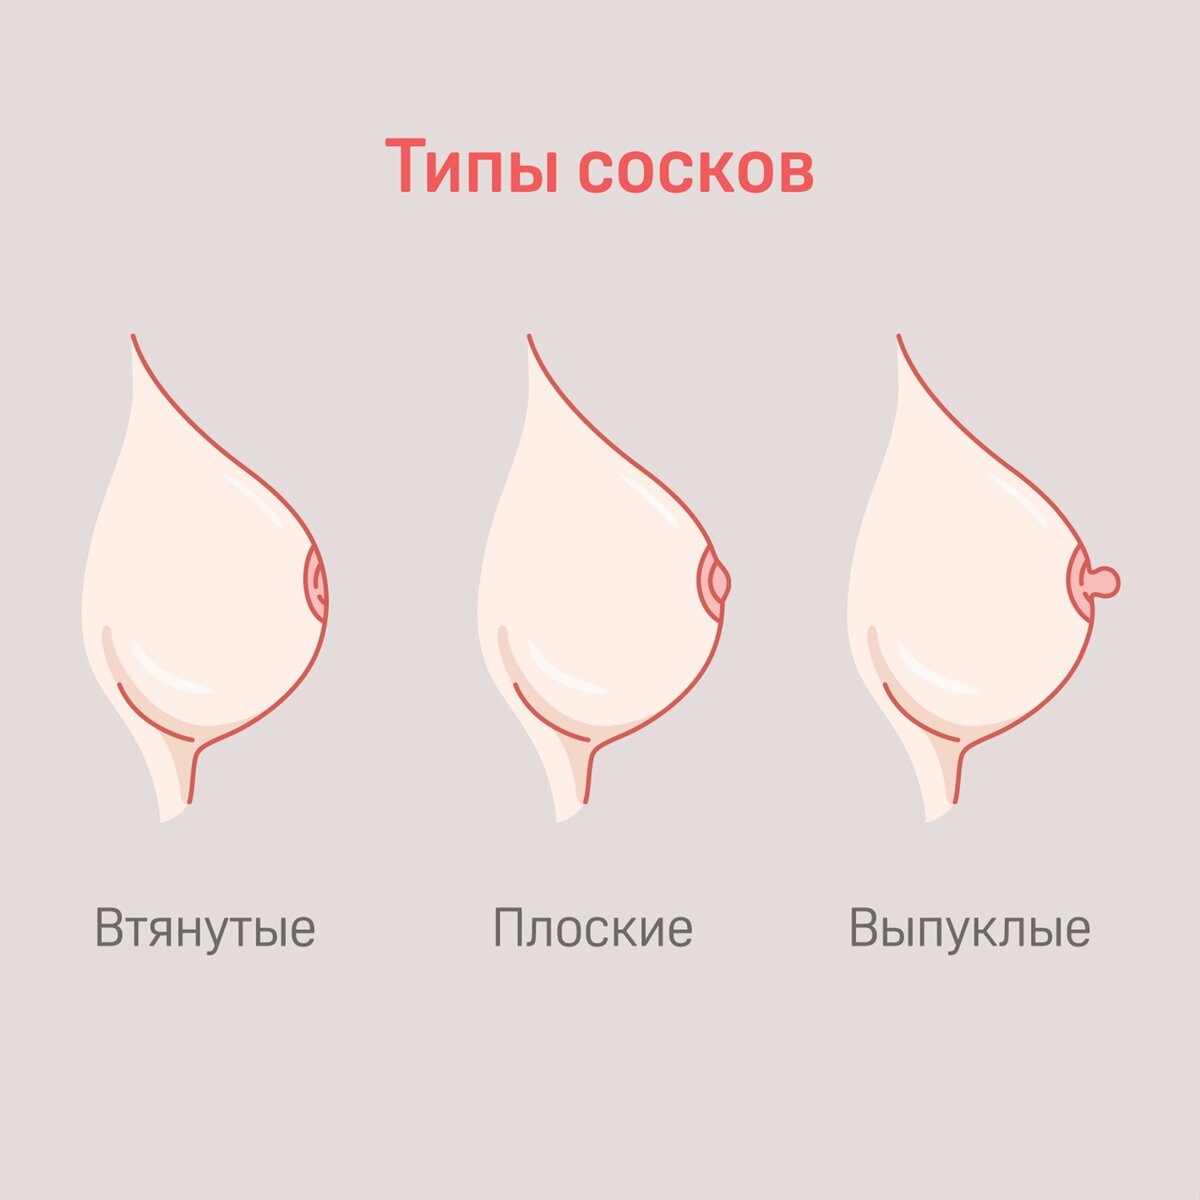 Женские соски - виды, размер и цвет - интересное о груди женщины.